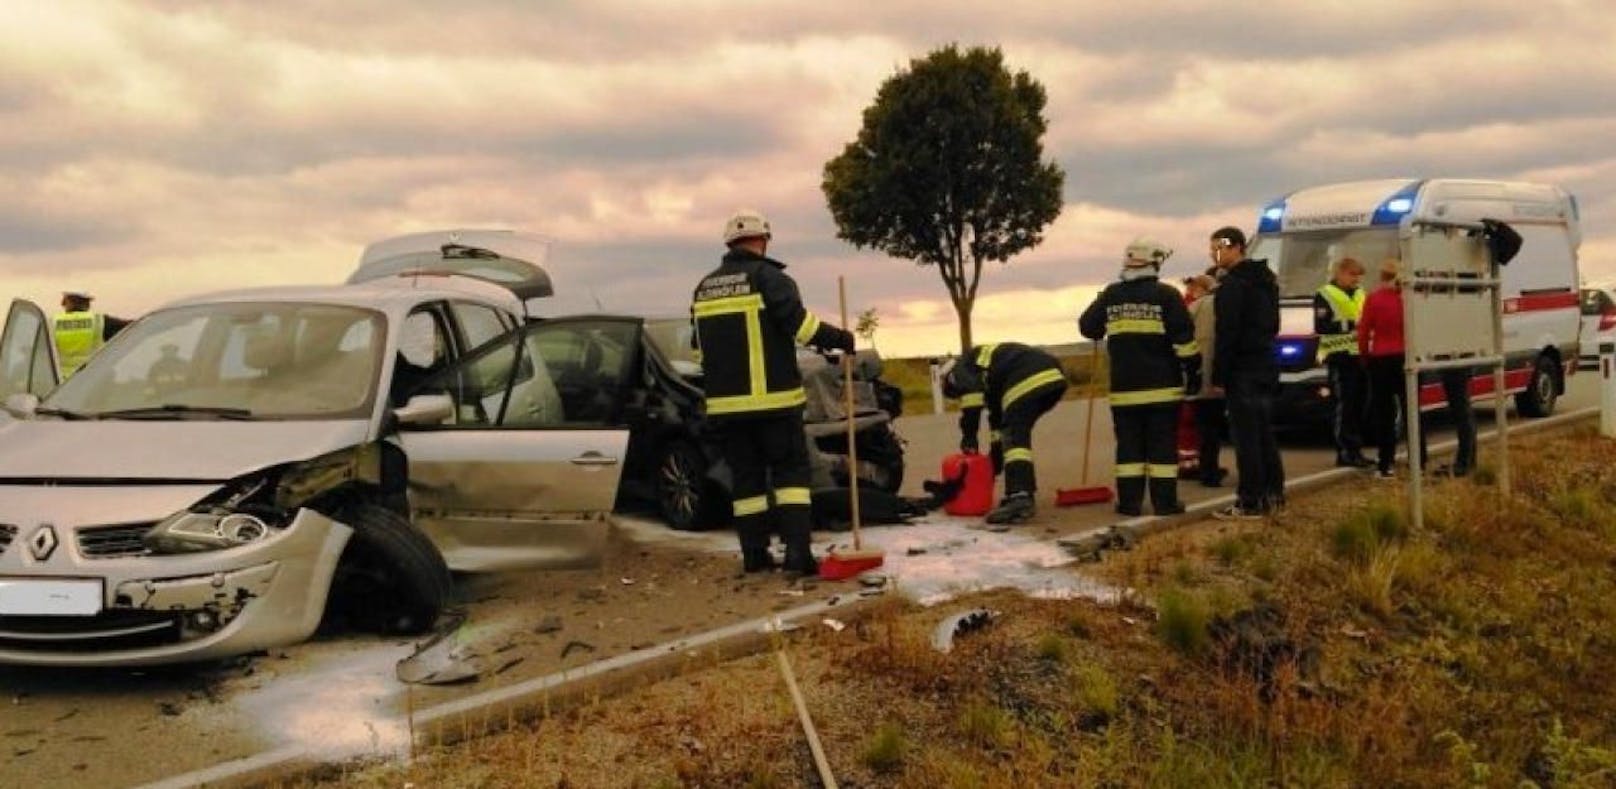 Totalschaden bei beiden Unfallautos  die Florianis aus Kleinhöflein kümmerten sich um die Fahrzeugbergungen.